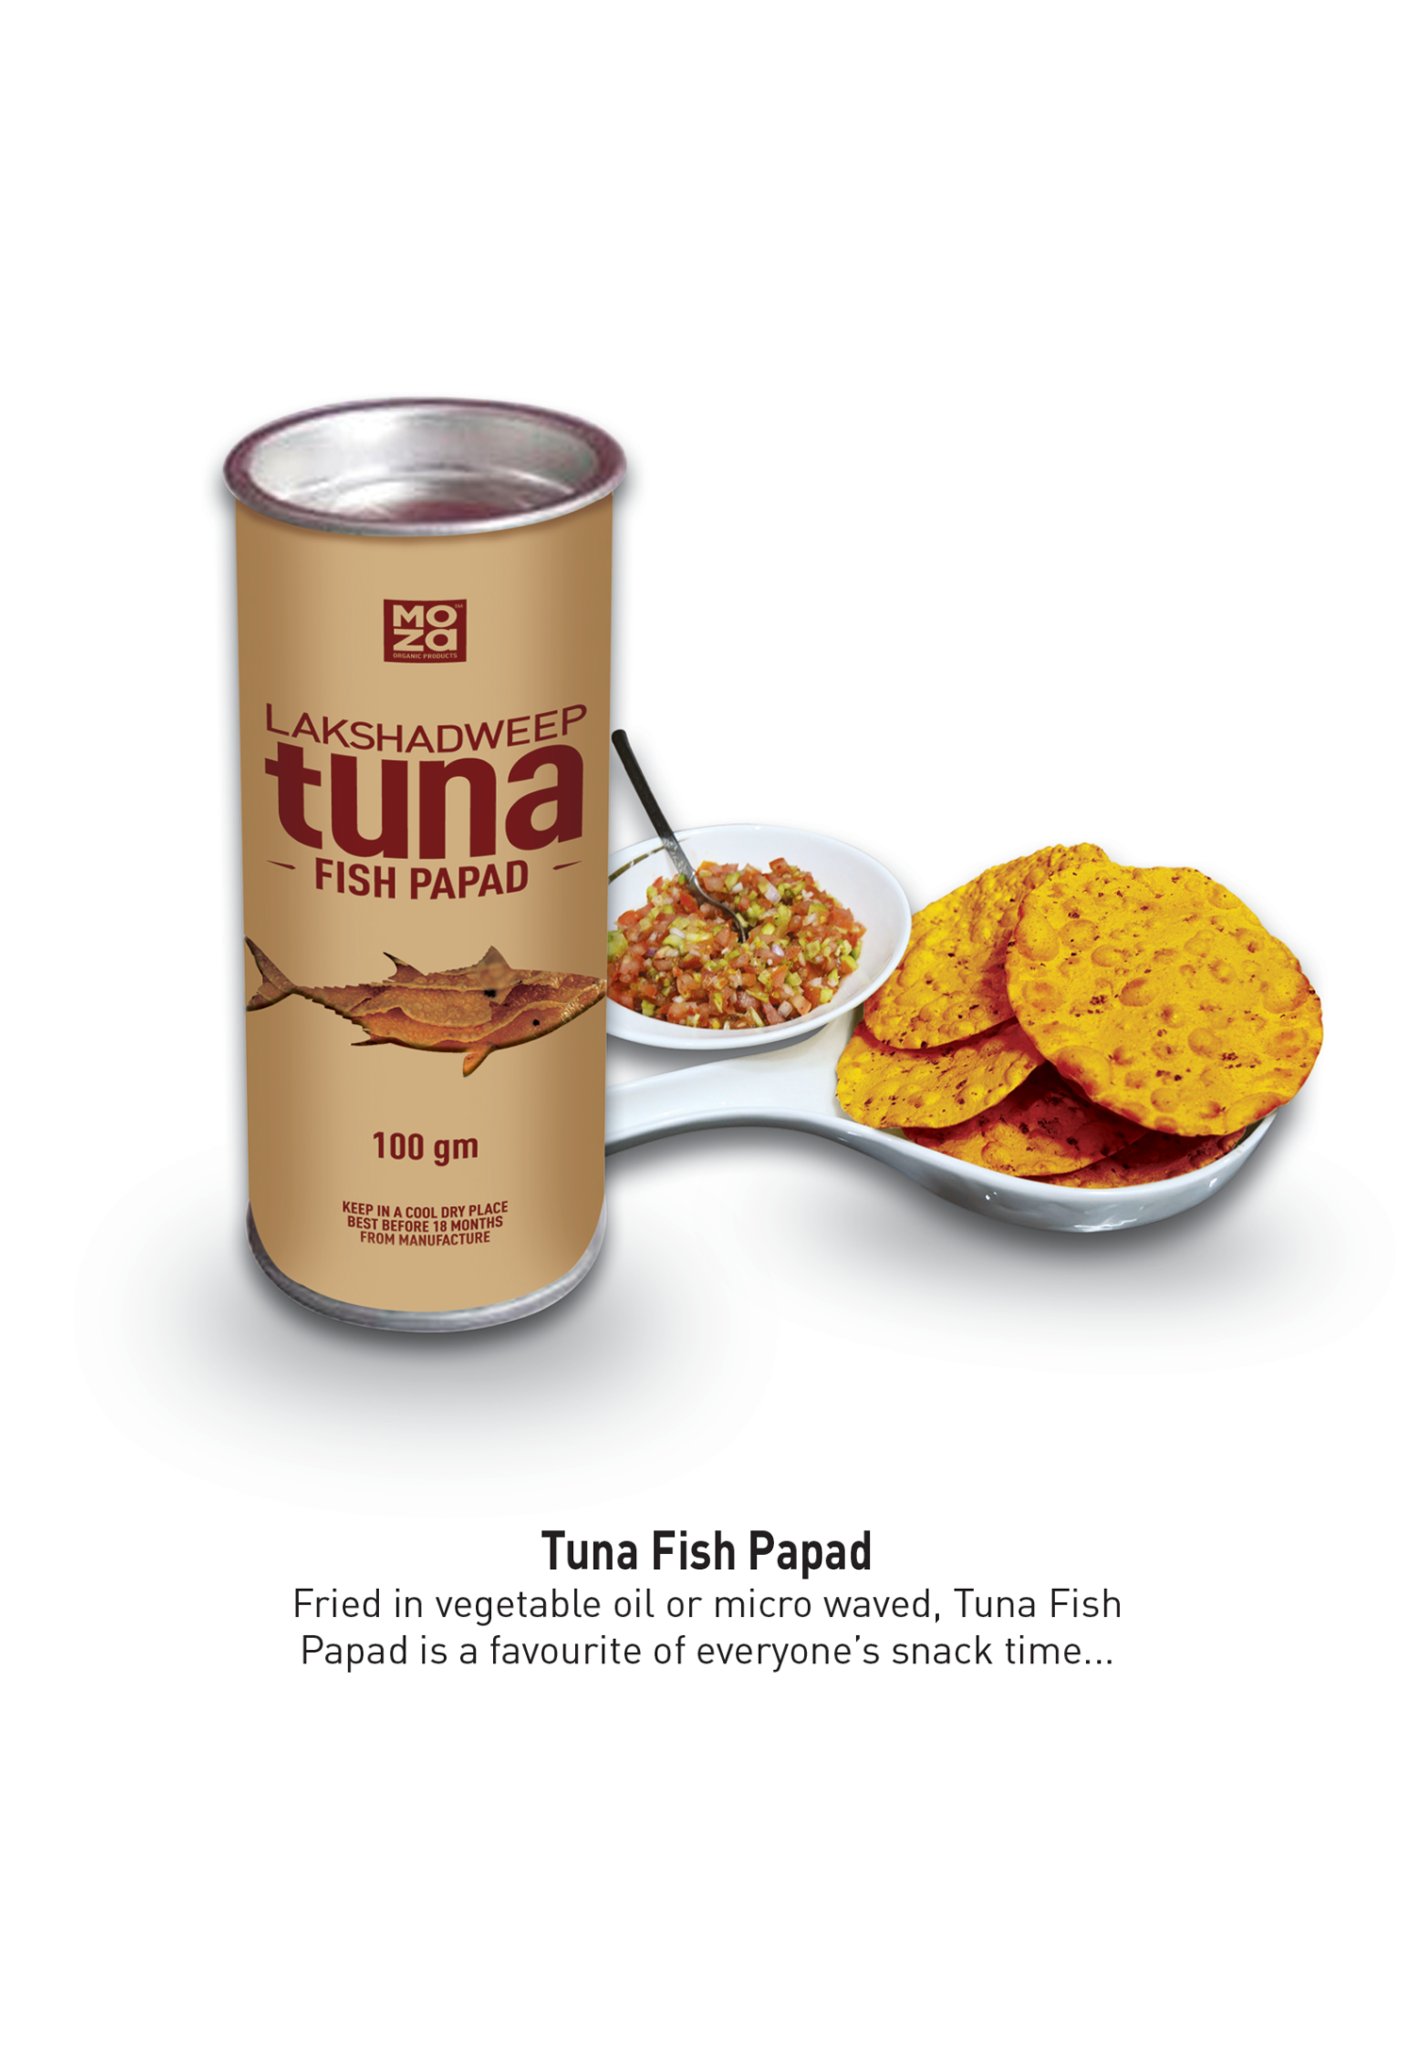 TunaFishPapad-1